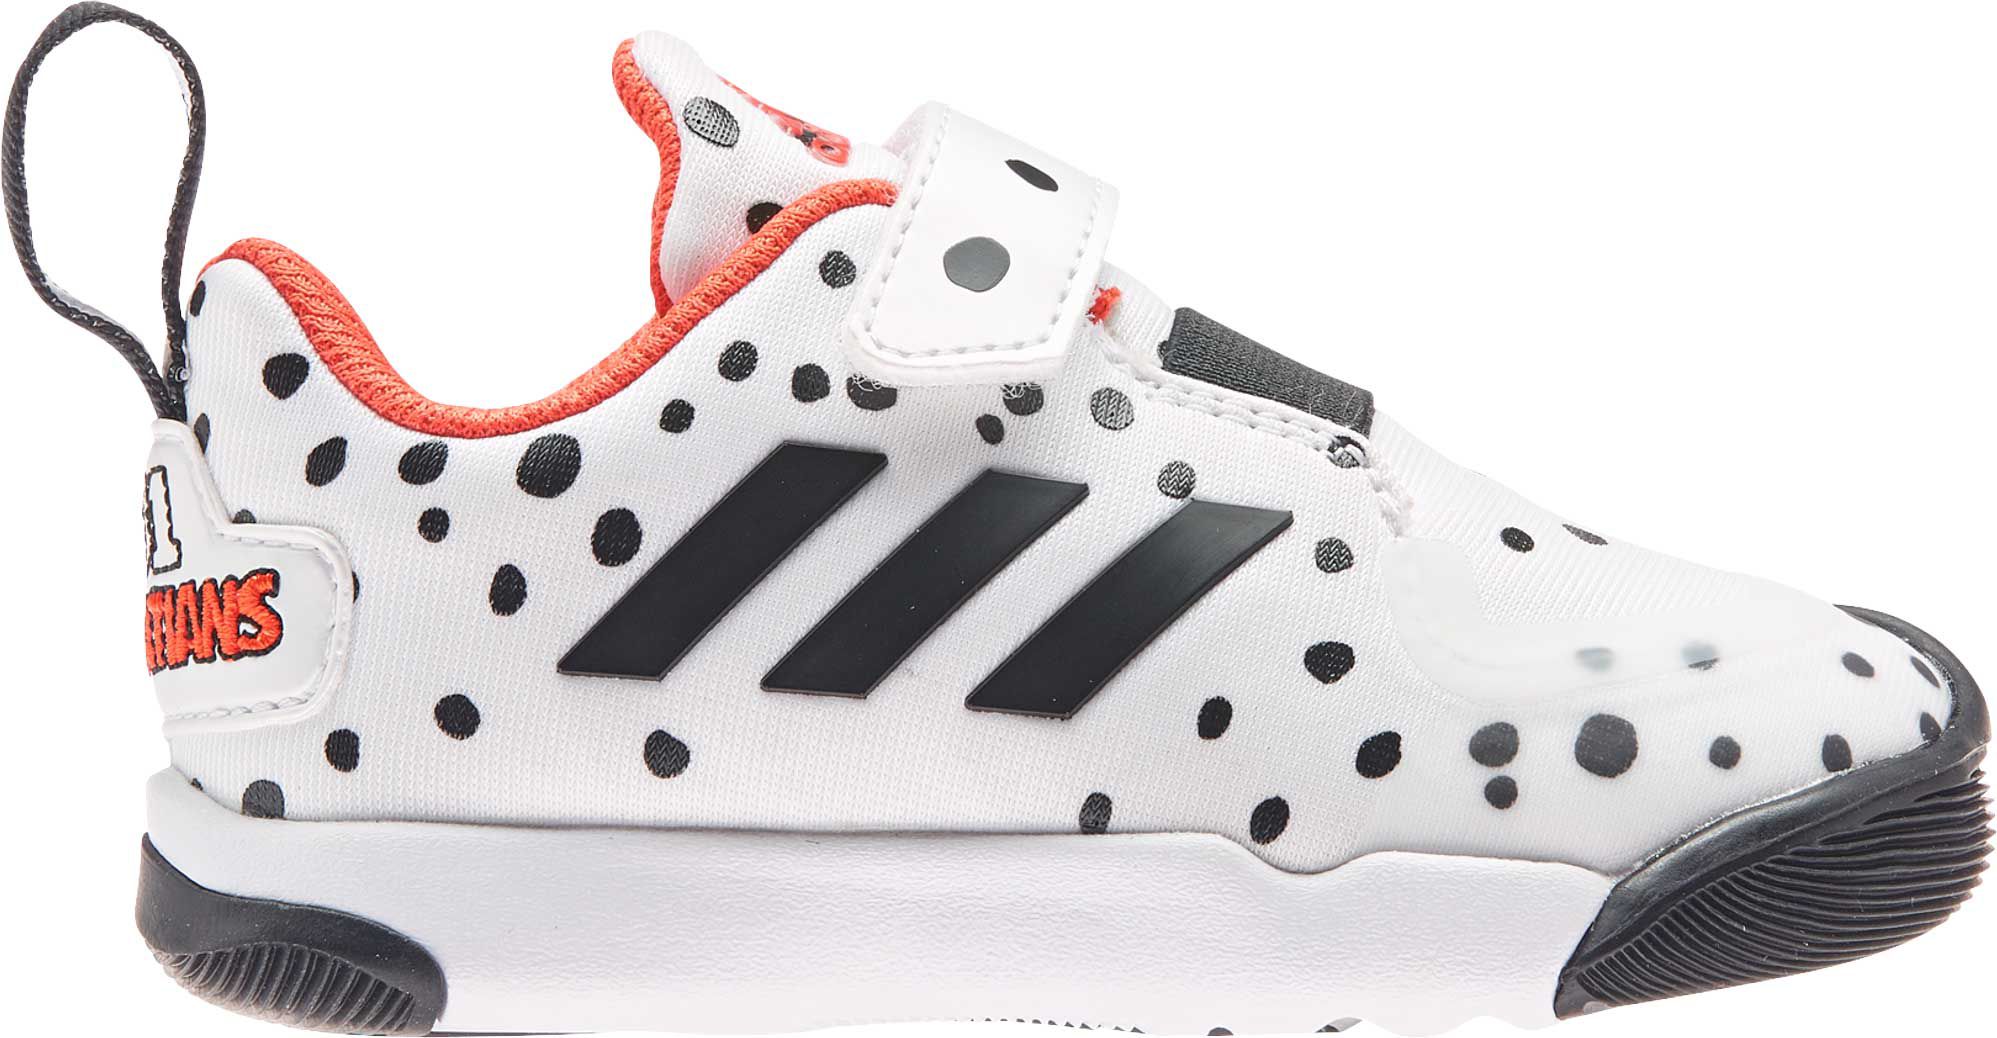 101 dalmatians shoes